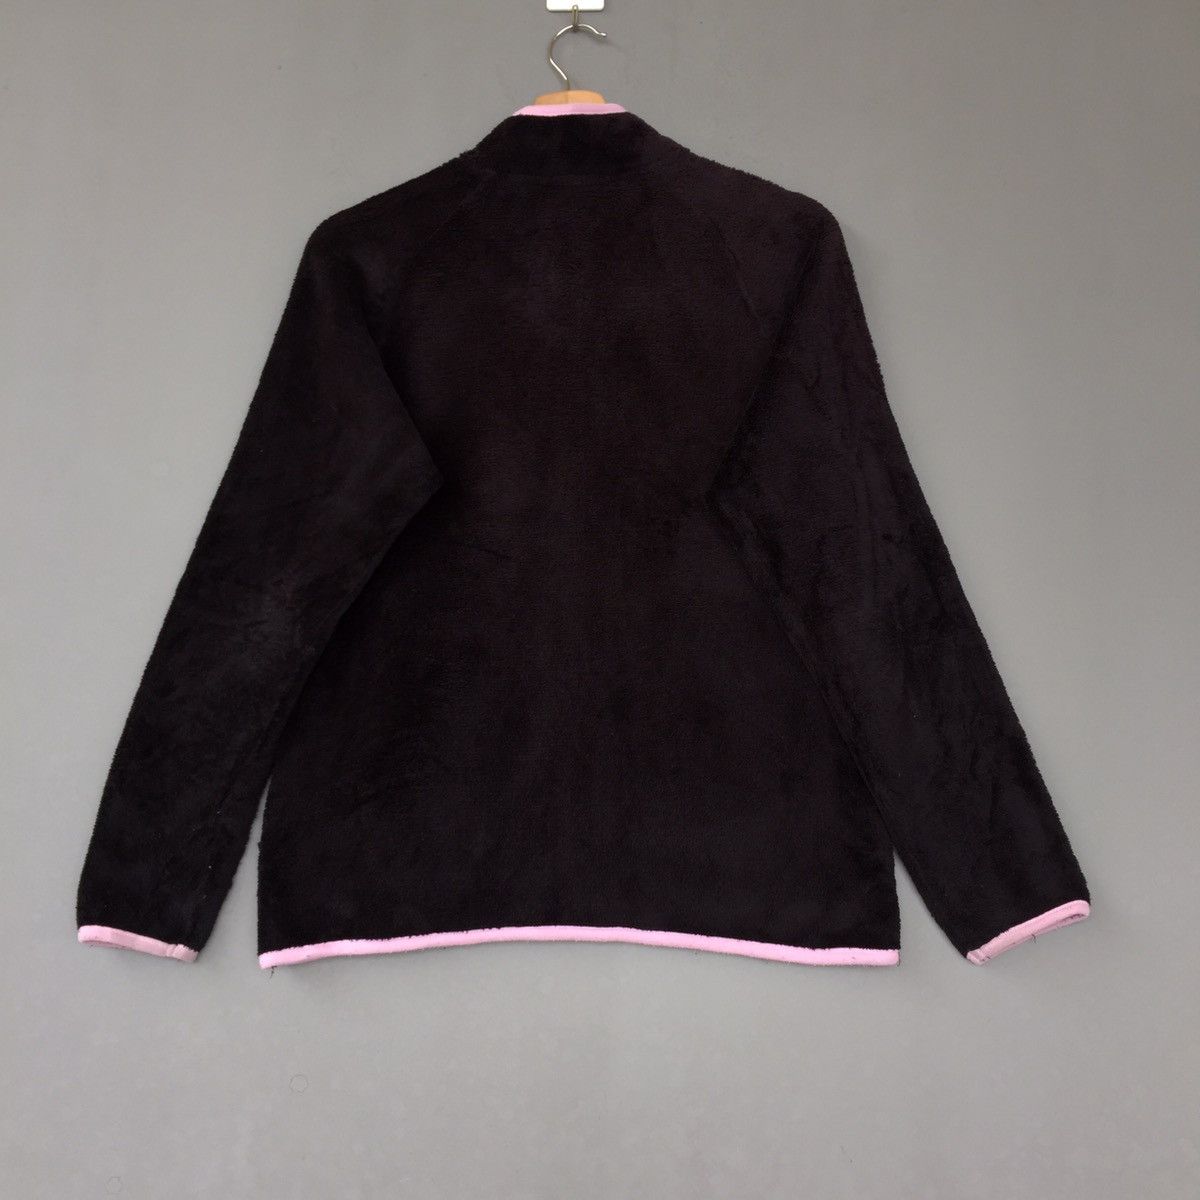 Vintage Hang Ten Fleece/Hang Ten Sweater pullover Jumper Size US L / EU 52-54 / 3 - 2 Preview